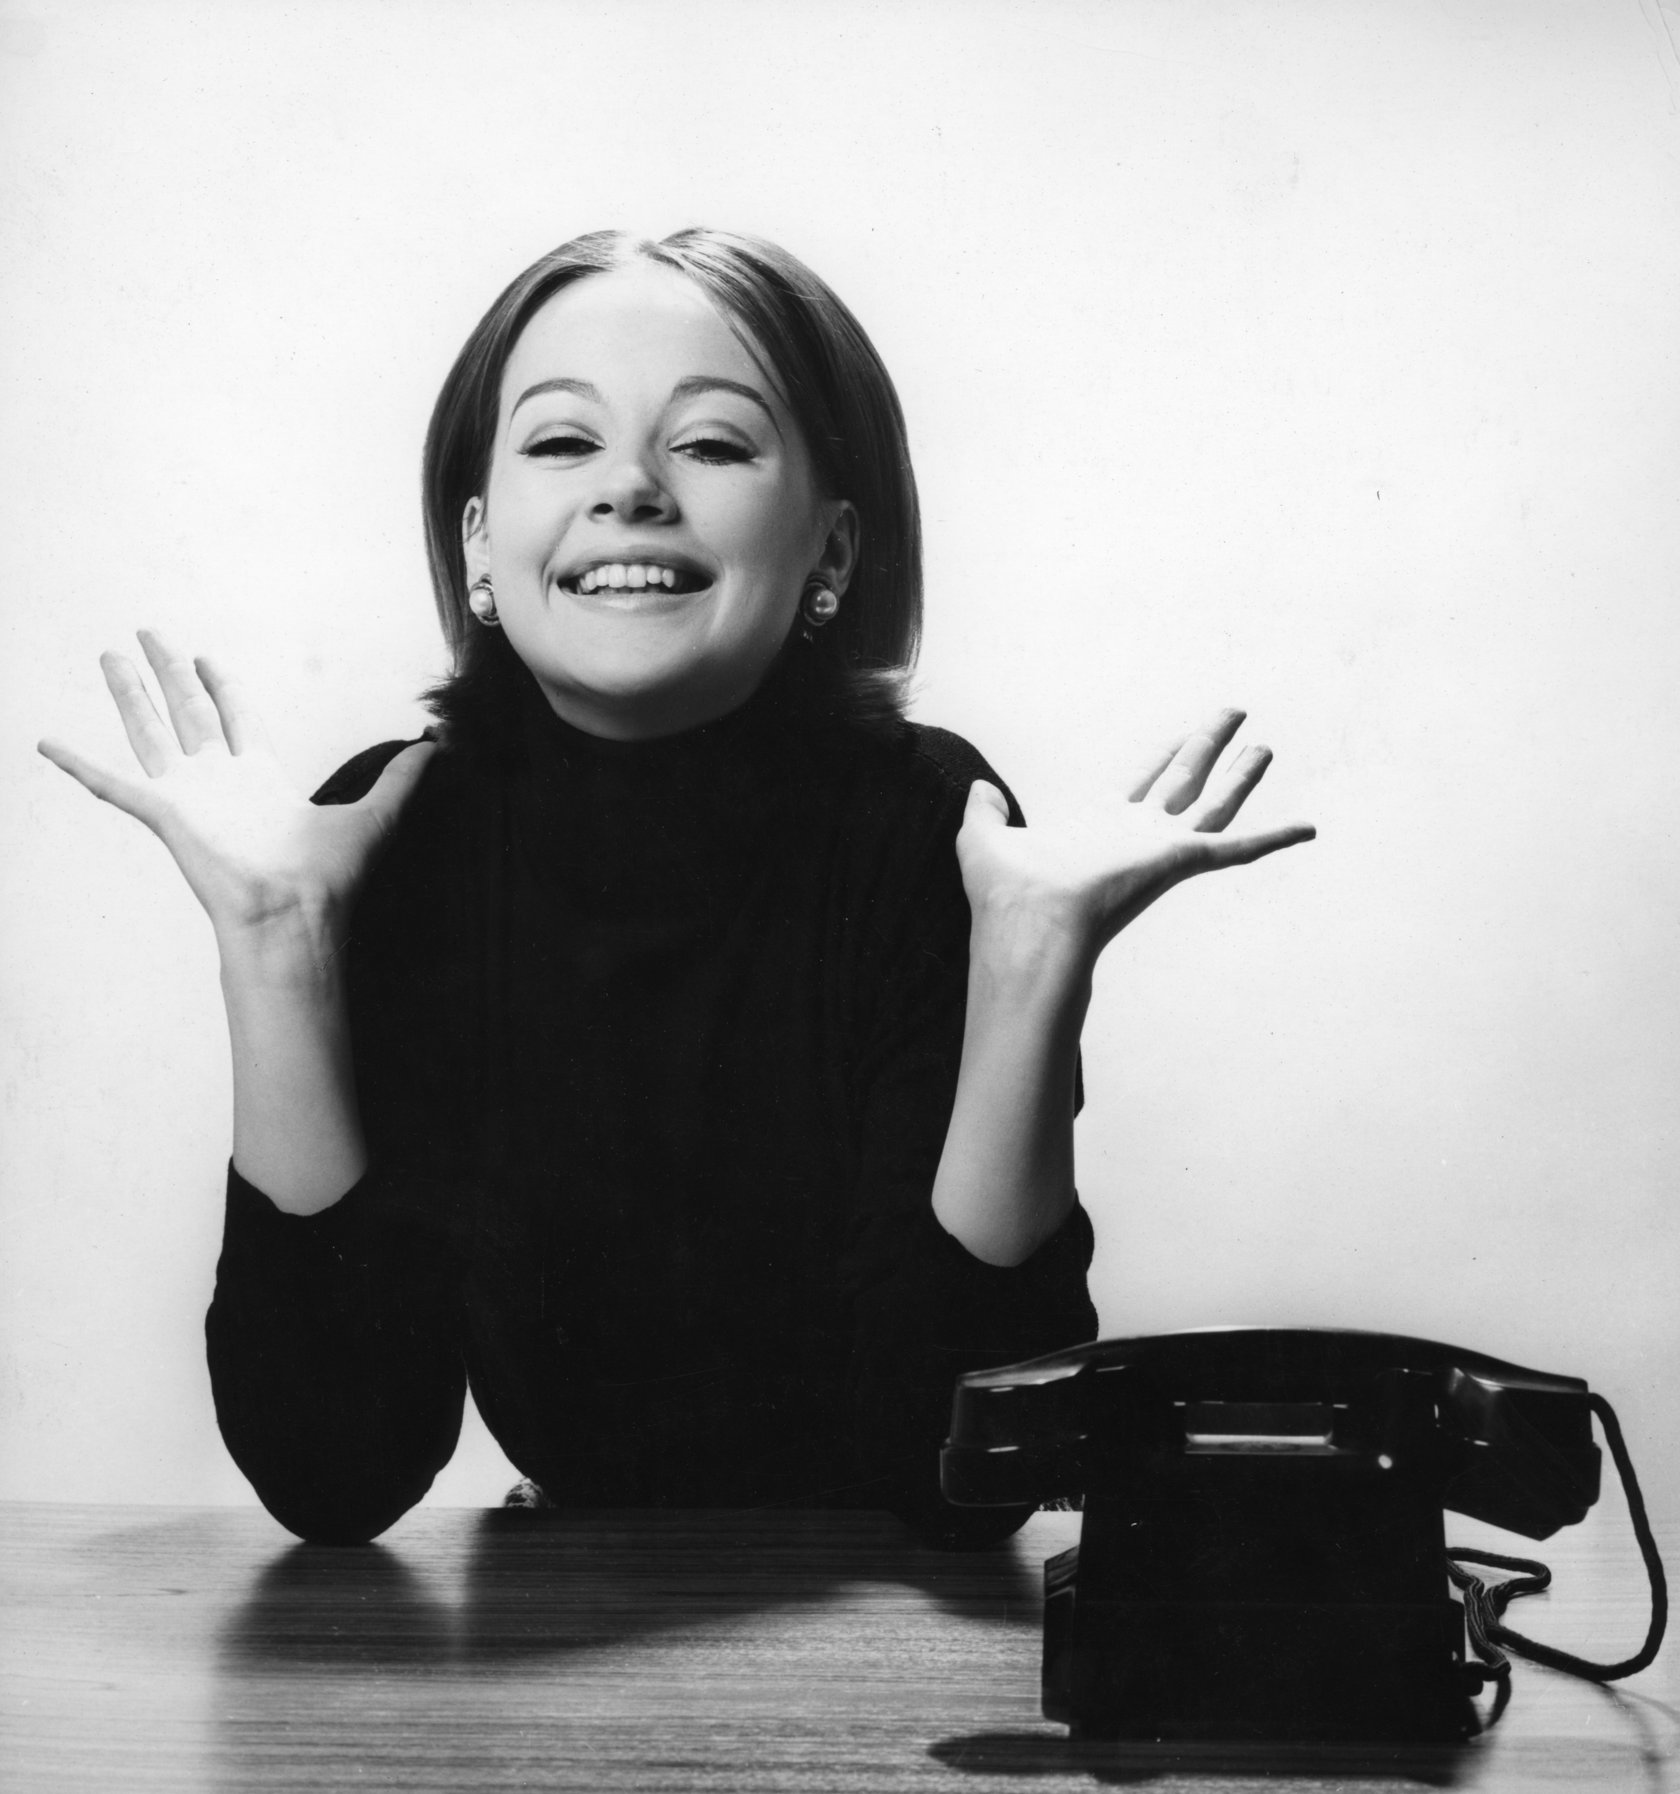 Photo Archiv Schweitzer: lachende Frau am Schreibtisch